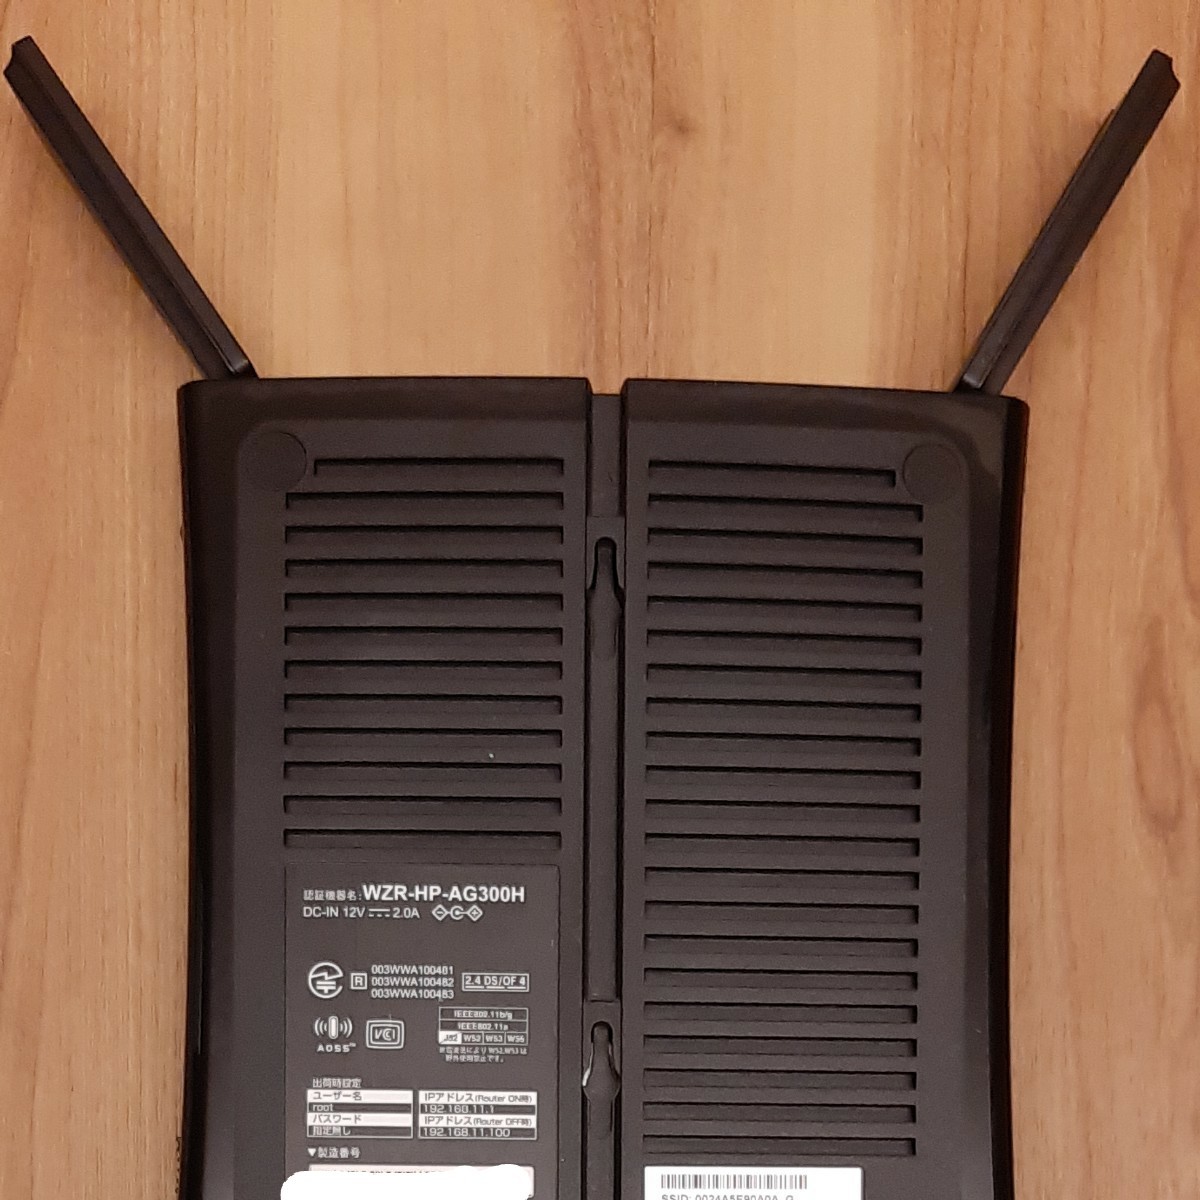 BUFFALO WZR-HP-AG300H 無線LANルーター 11n/a 300Mbps 有線 1Gbps